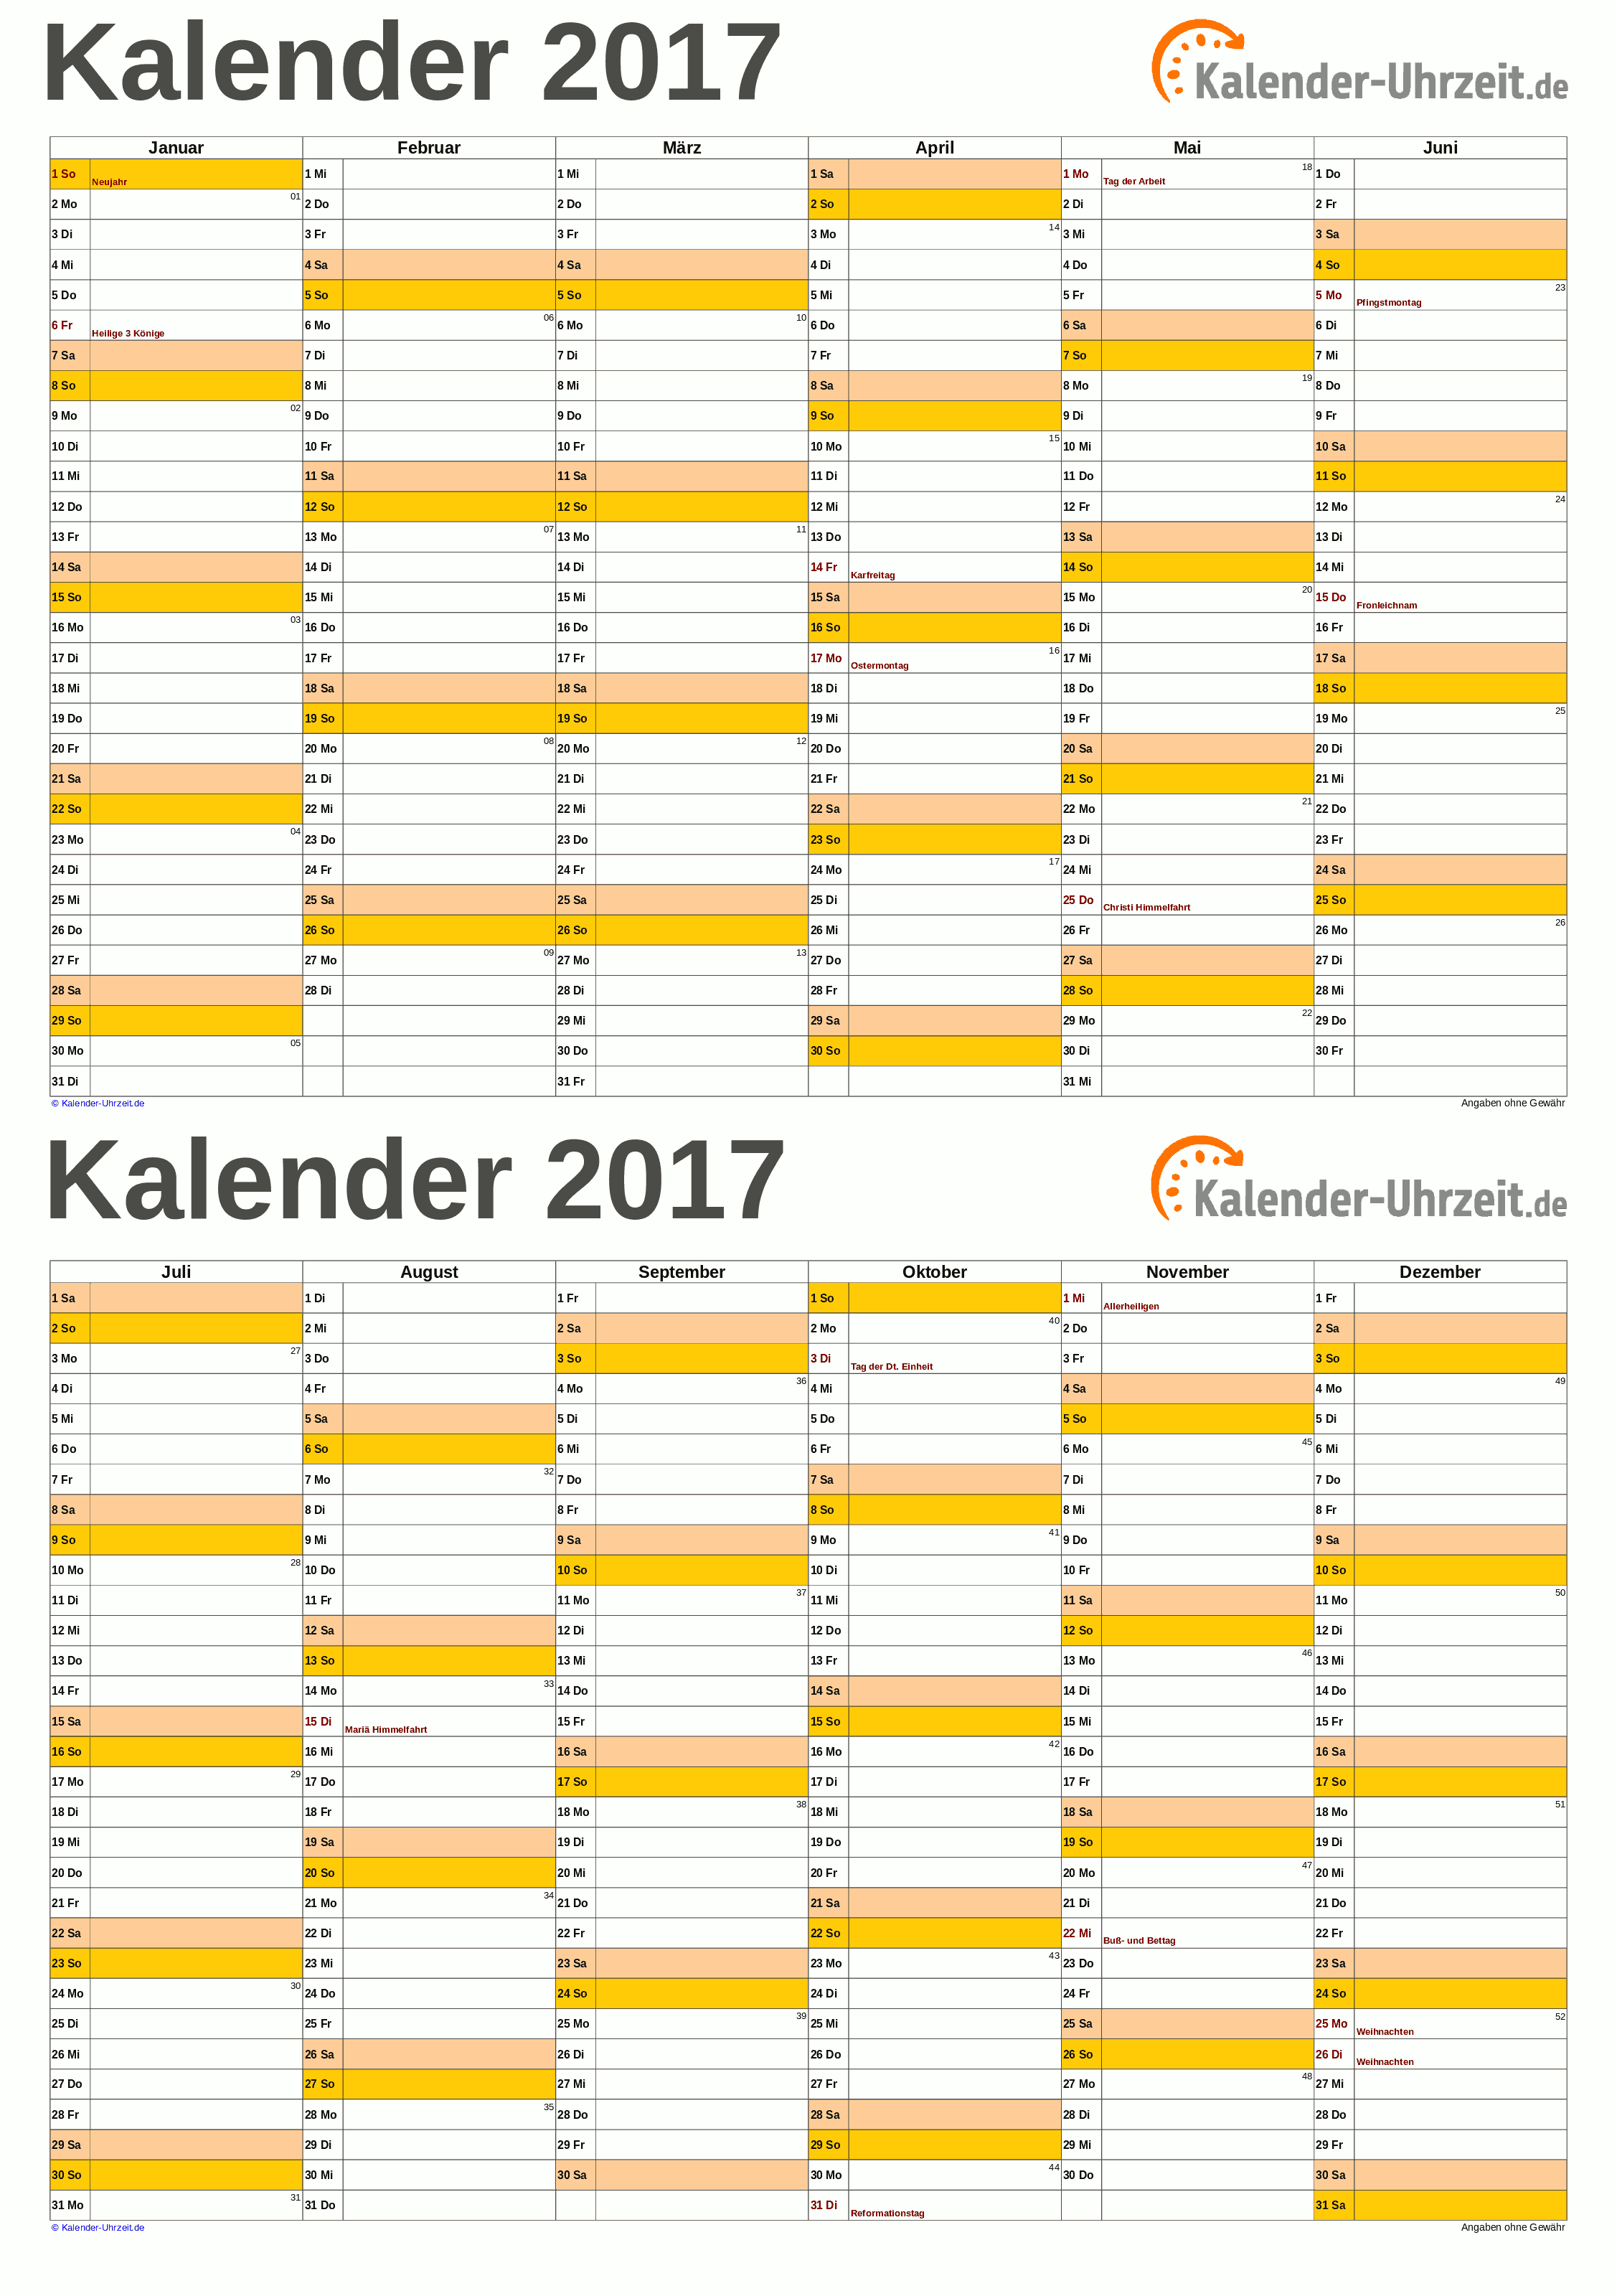 Kalender 2017 A5 Pdf Vorlage Orange Kaluhr Weitere Kalender Vorlagen 2017 Http Www Kalender Uhrzeit De Kalender Zum Ausdrucken Kalender Kalender Vorlagen